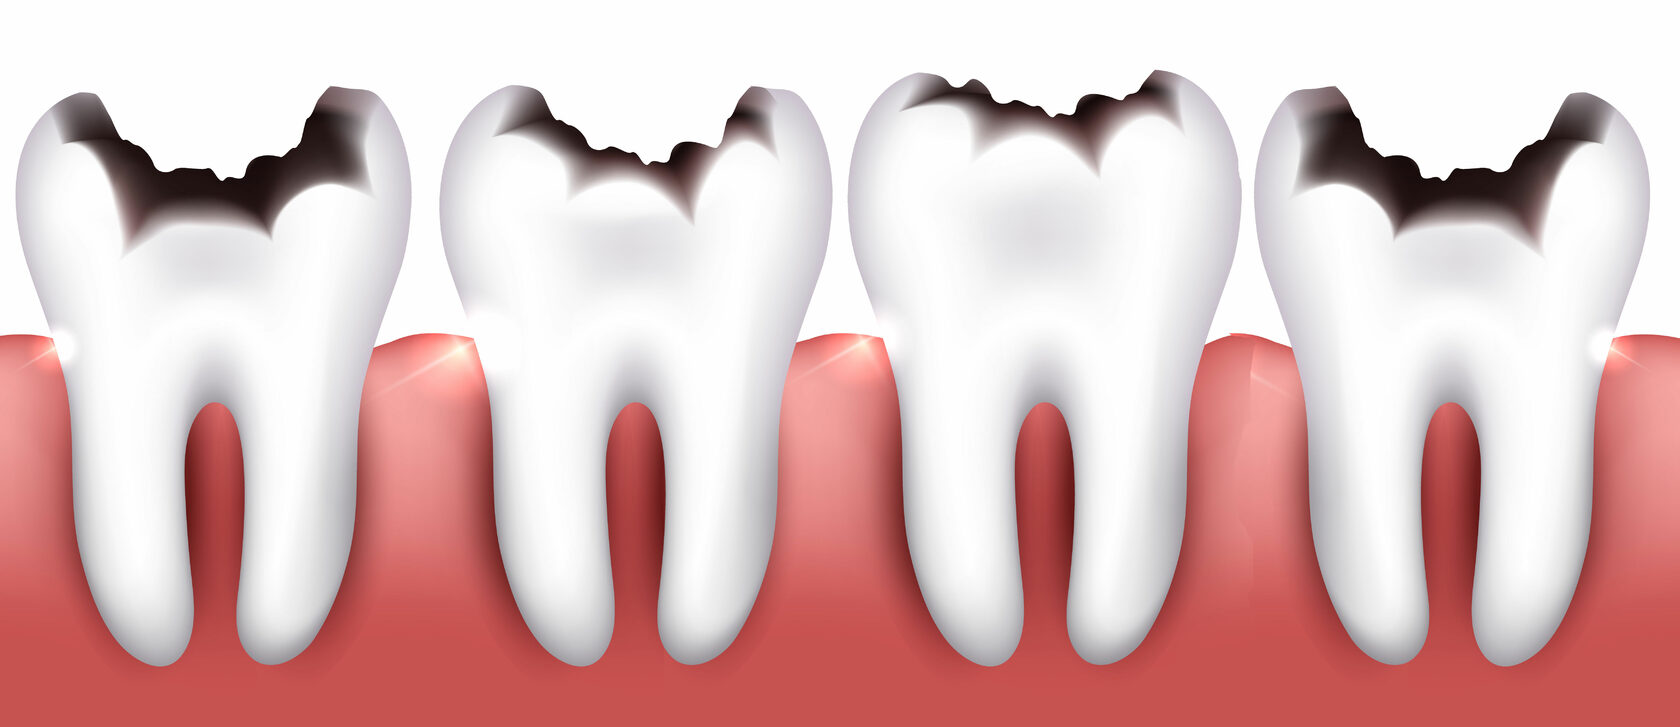 Трещина или перелом зуба